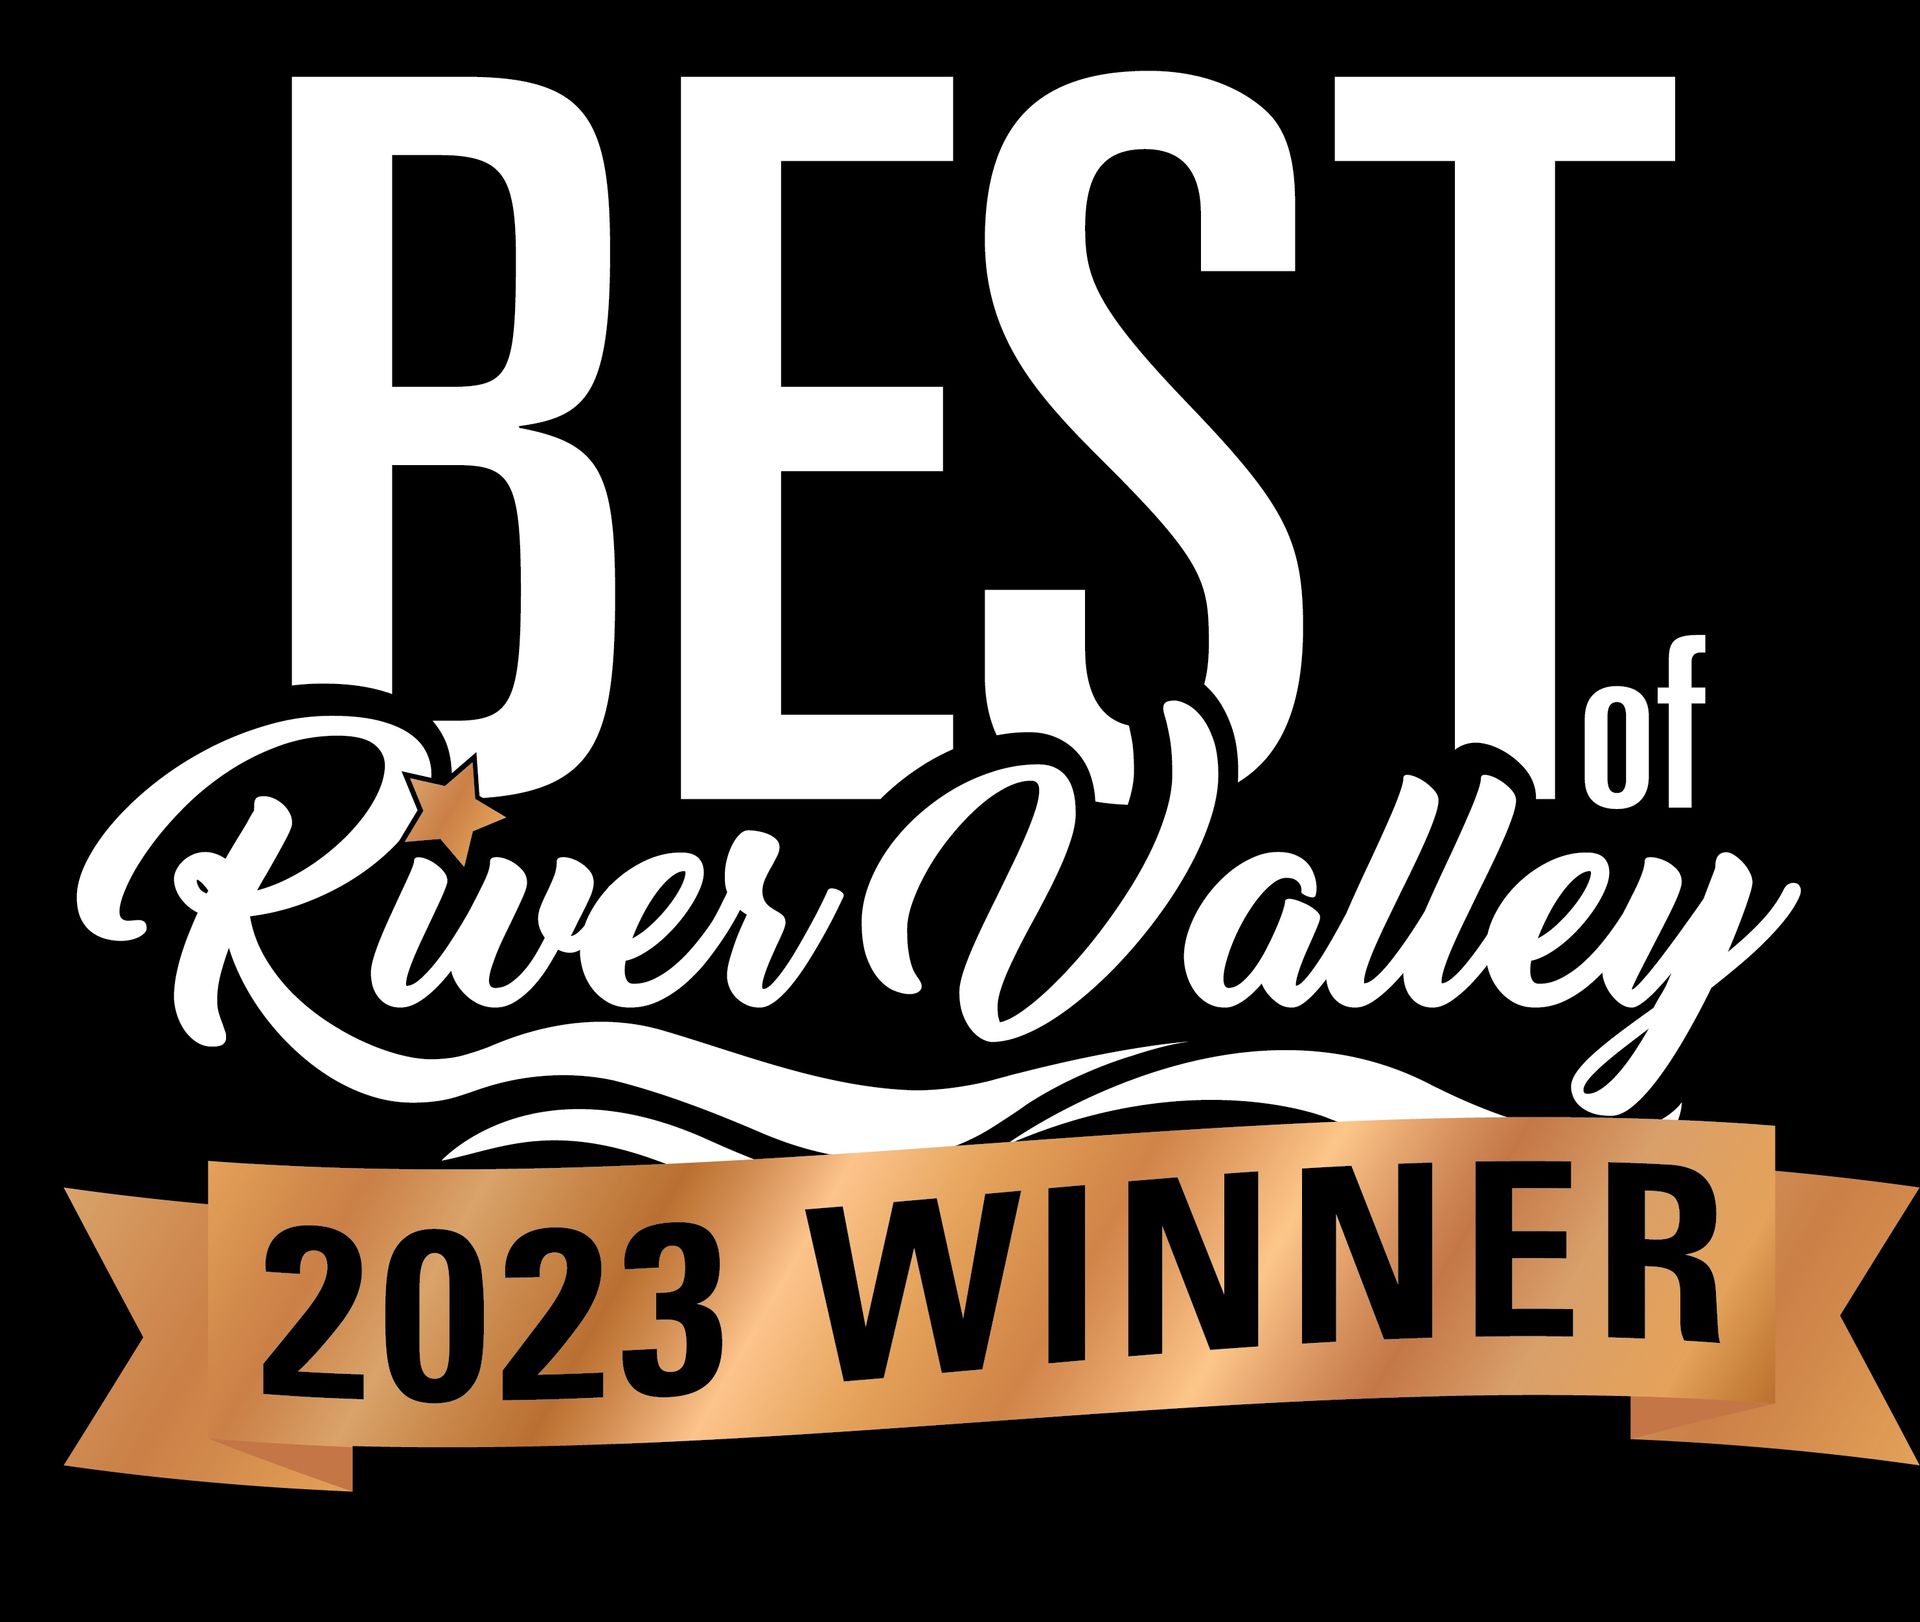 Best of River Valley 2023 winner - bronze